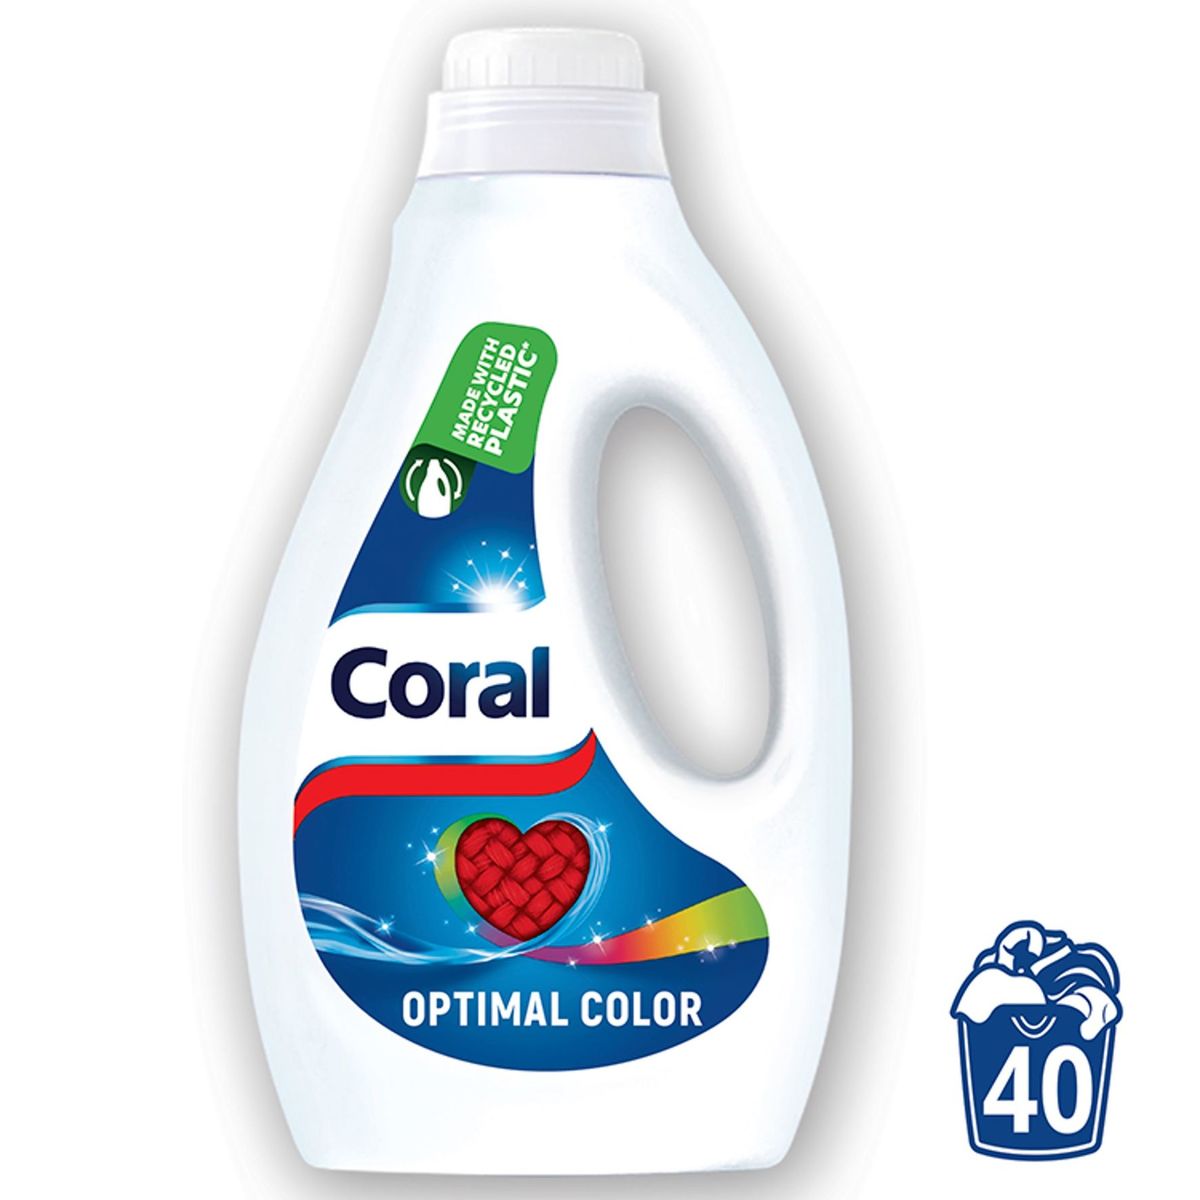 Coral Détergent liquide pour Linge Coloré Optimal Color 40 Lavages